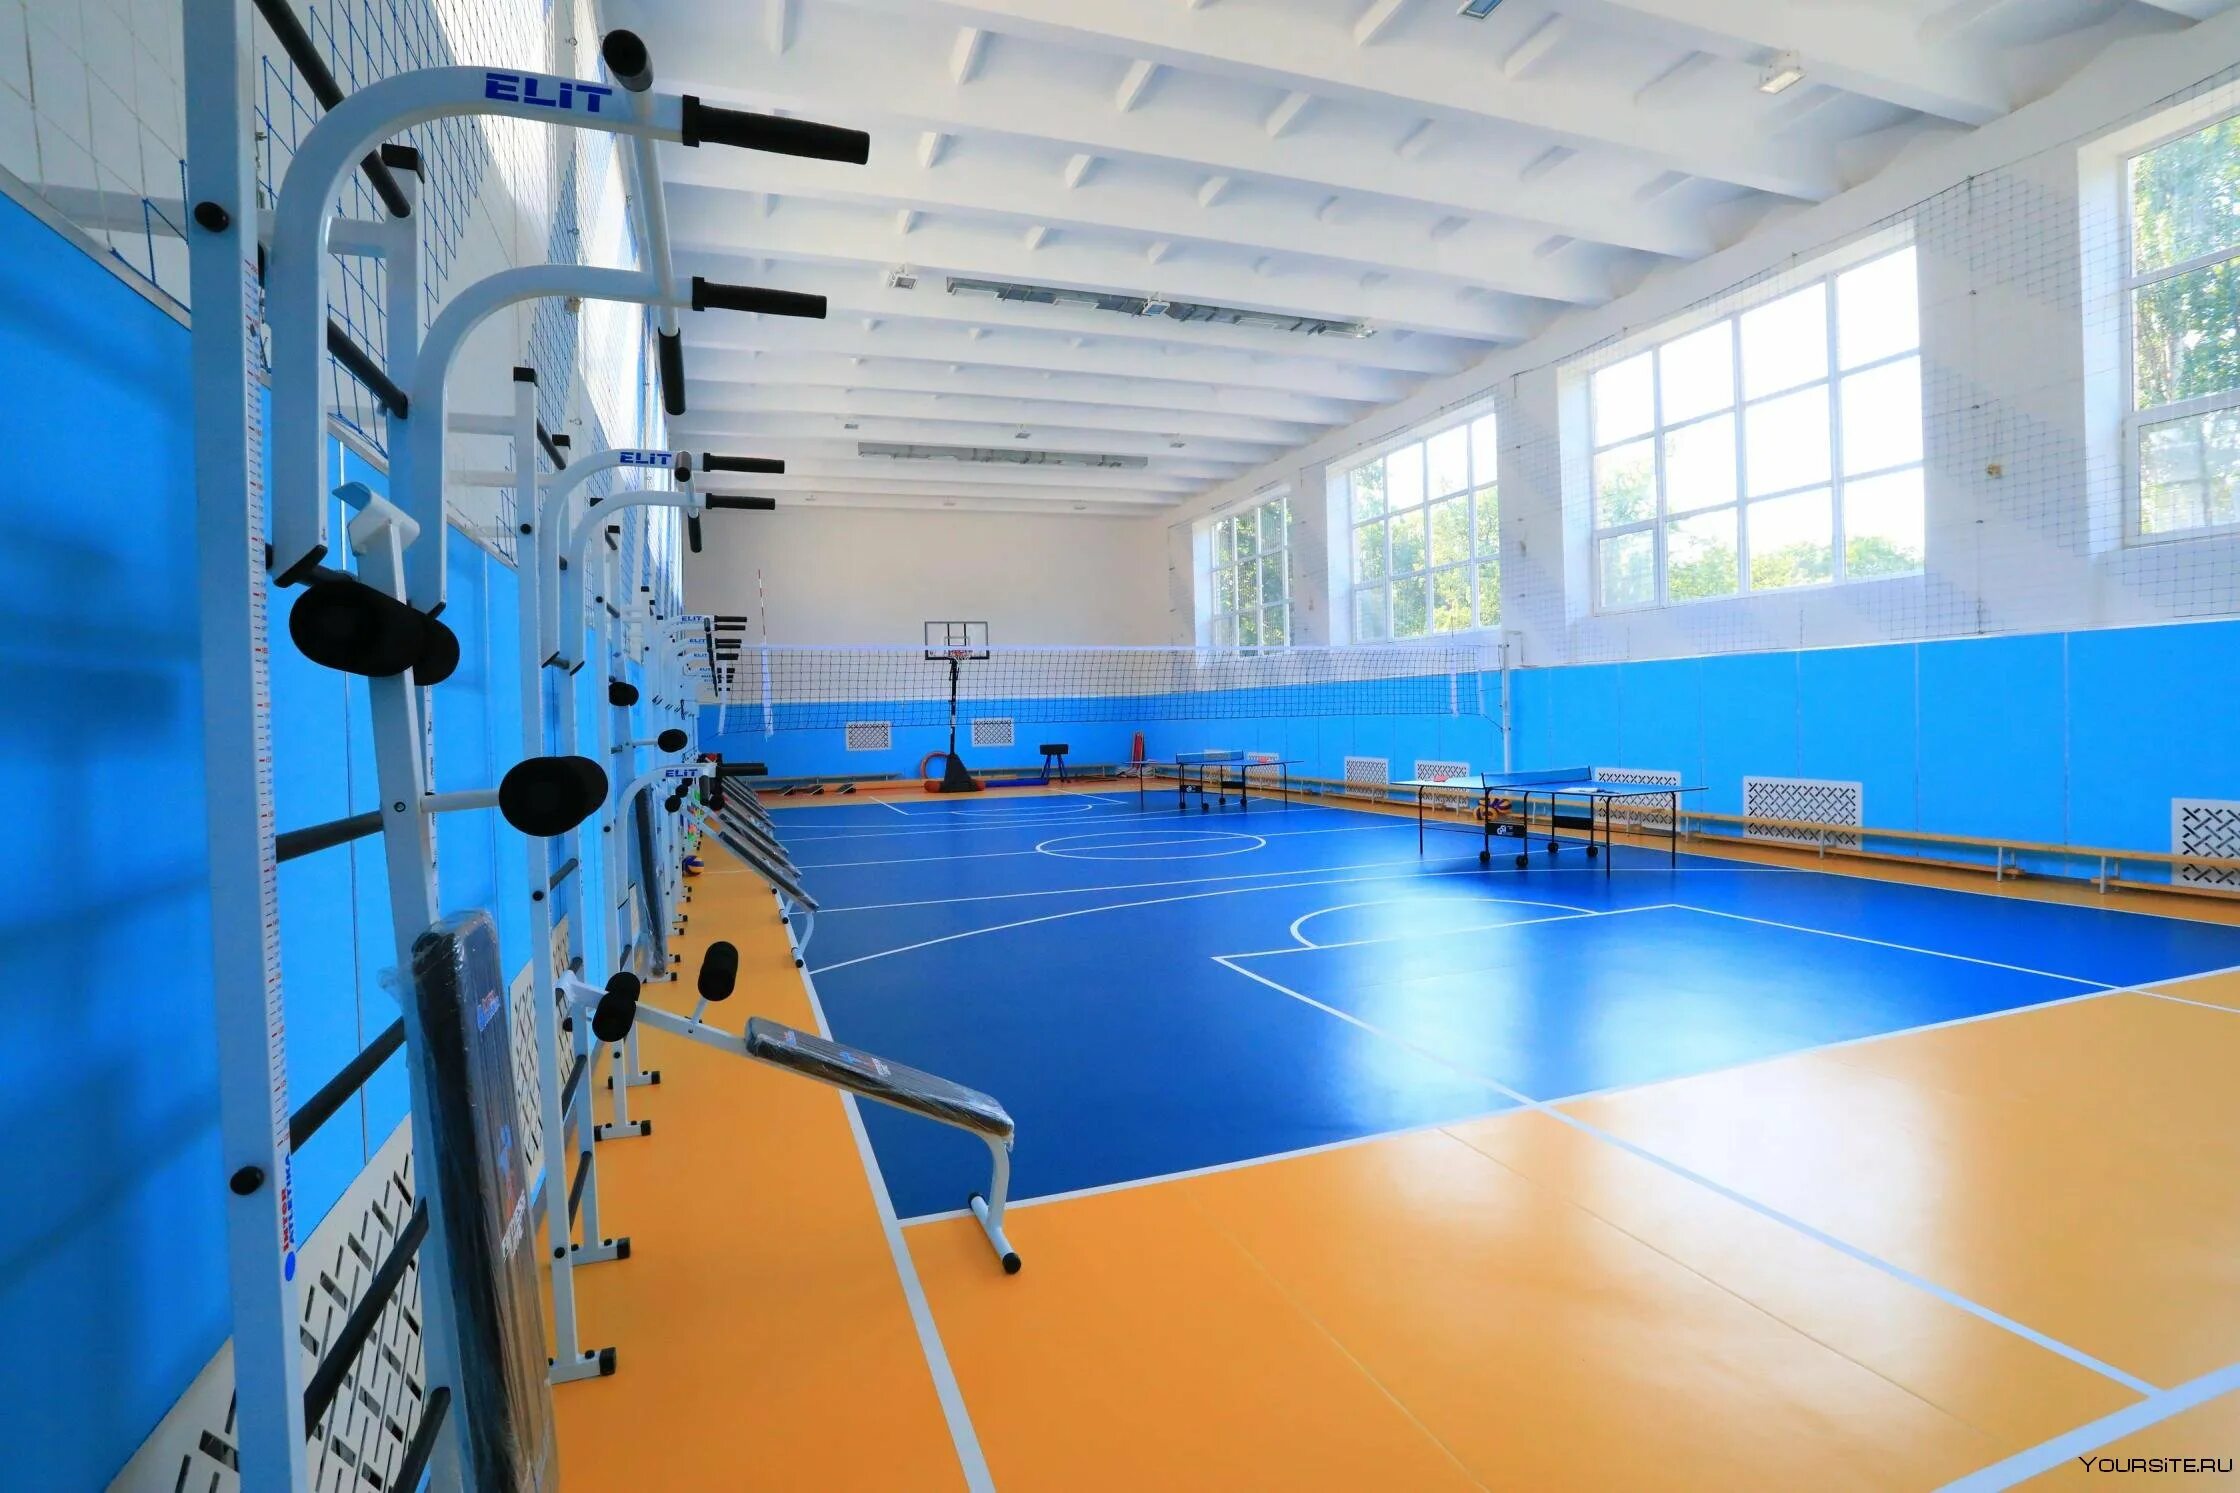 Спорт в большой зал. Иркутск 17 школа спорт зал. Спортивный зал. Школьный спортивный зал. Спортивный зал в школе.